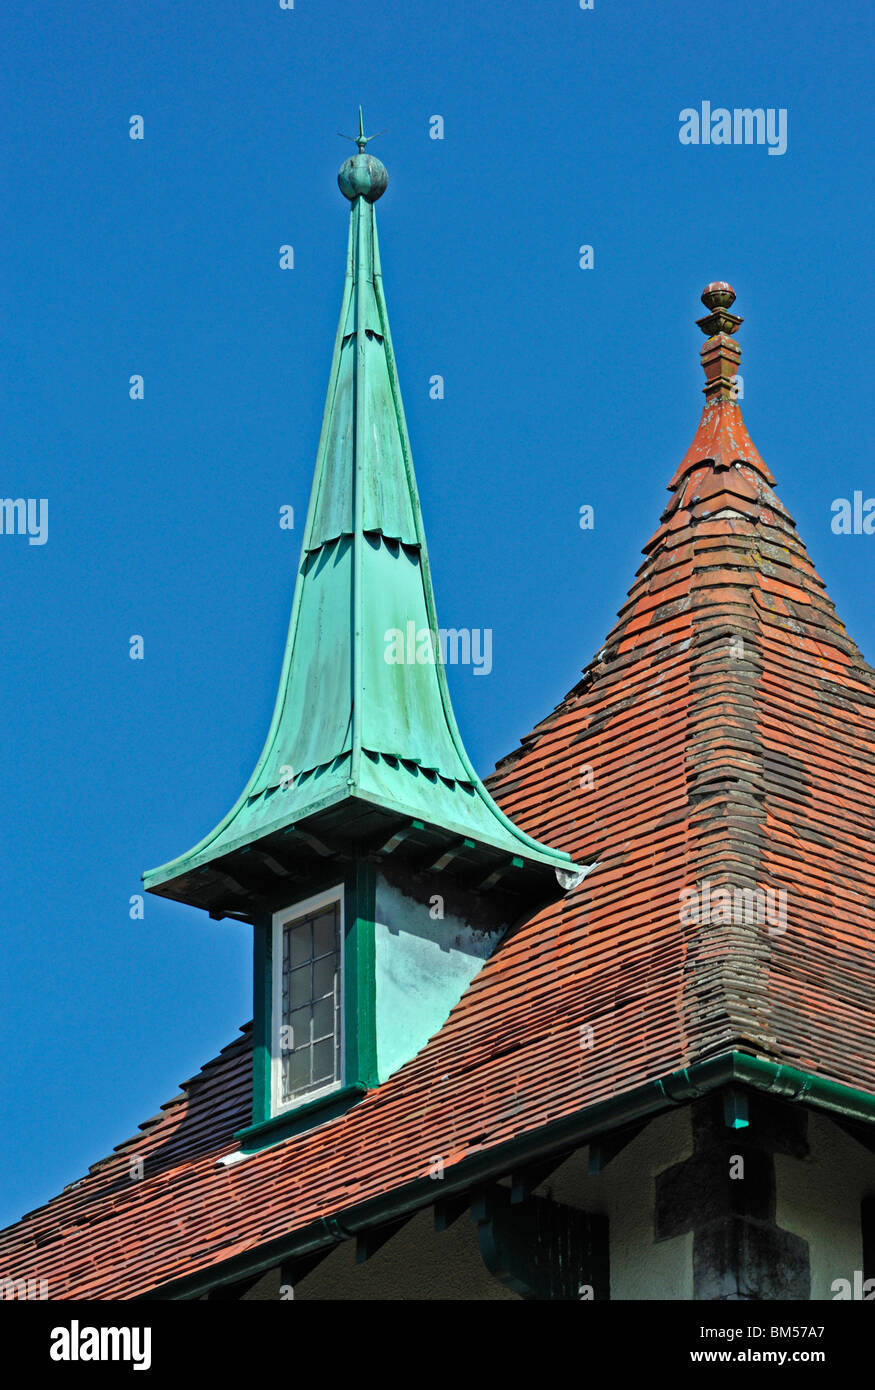 Dachfenster und Spirelet. 'Hillcote', 80, Gillinggate, Kendal, Cumbria, England, Vereinigtes Königreich Europas. Stockfoto